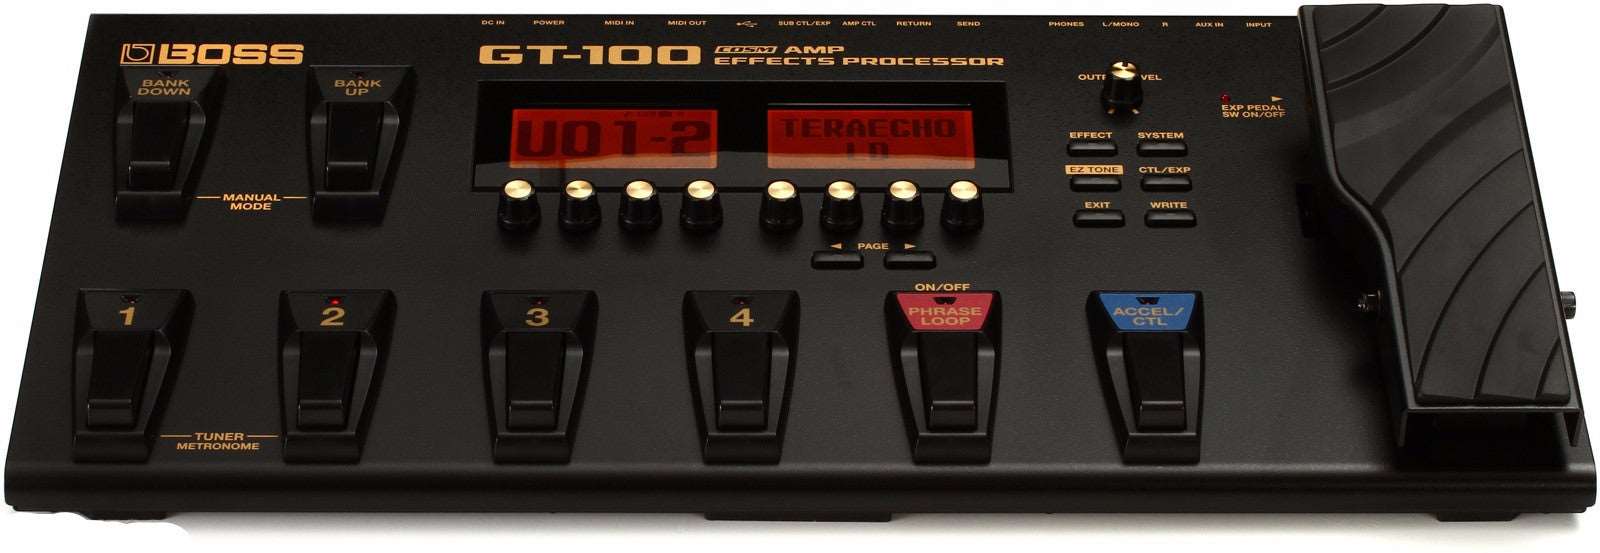 BOSS GT-100 GUITAR EFFECT PROCESSOR | BOSS , Zoso Music